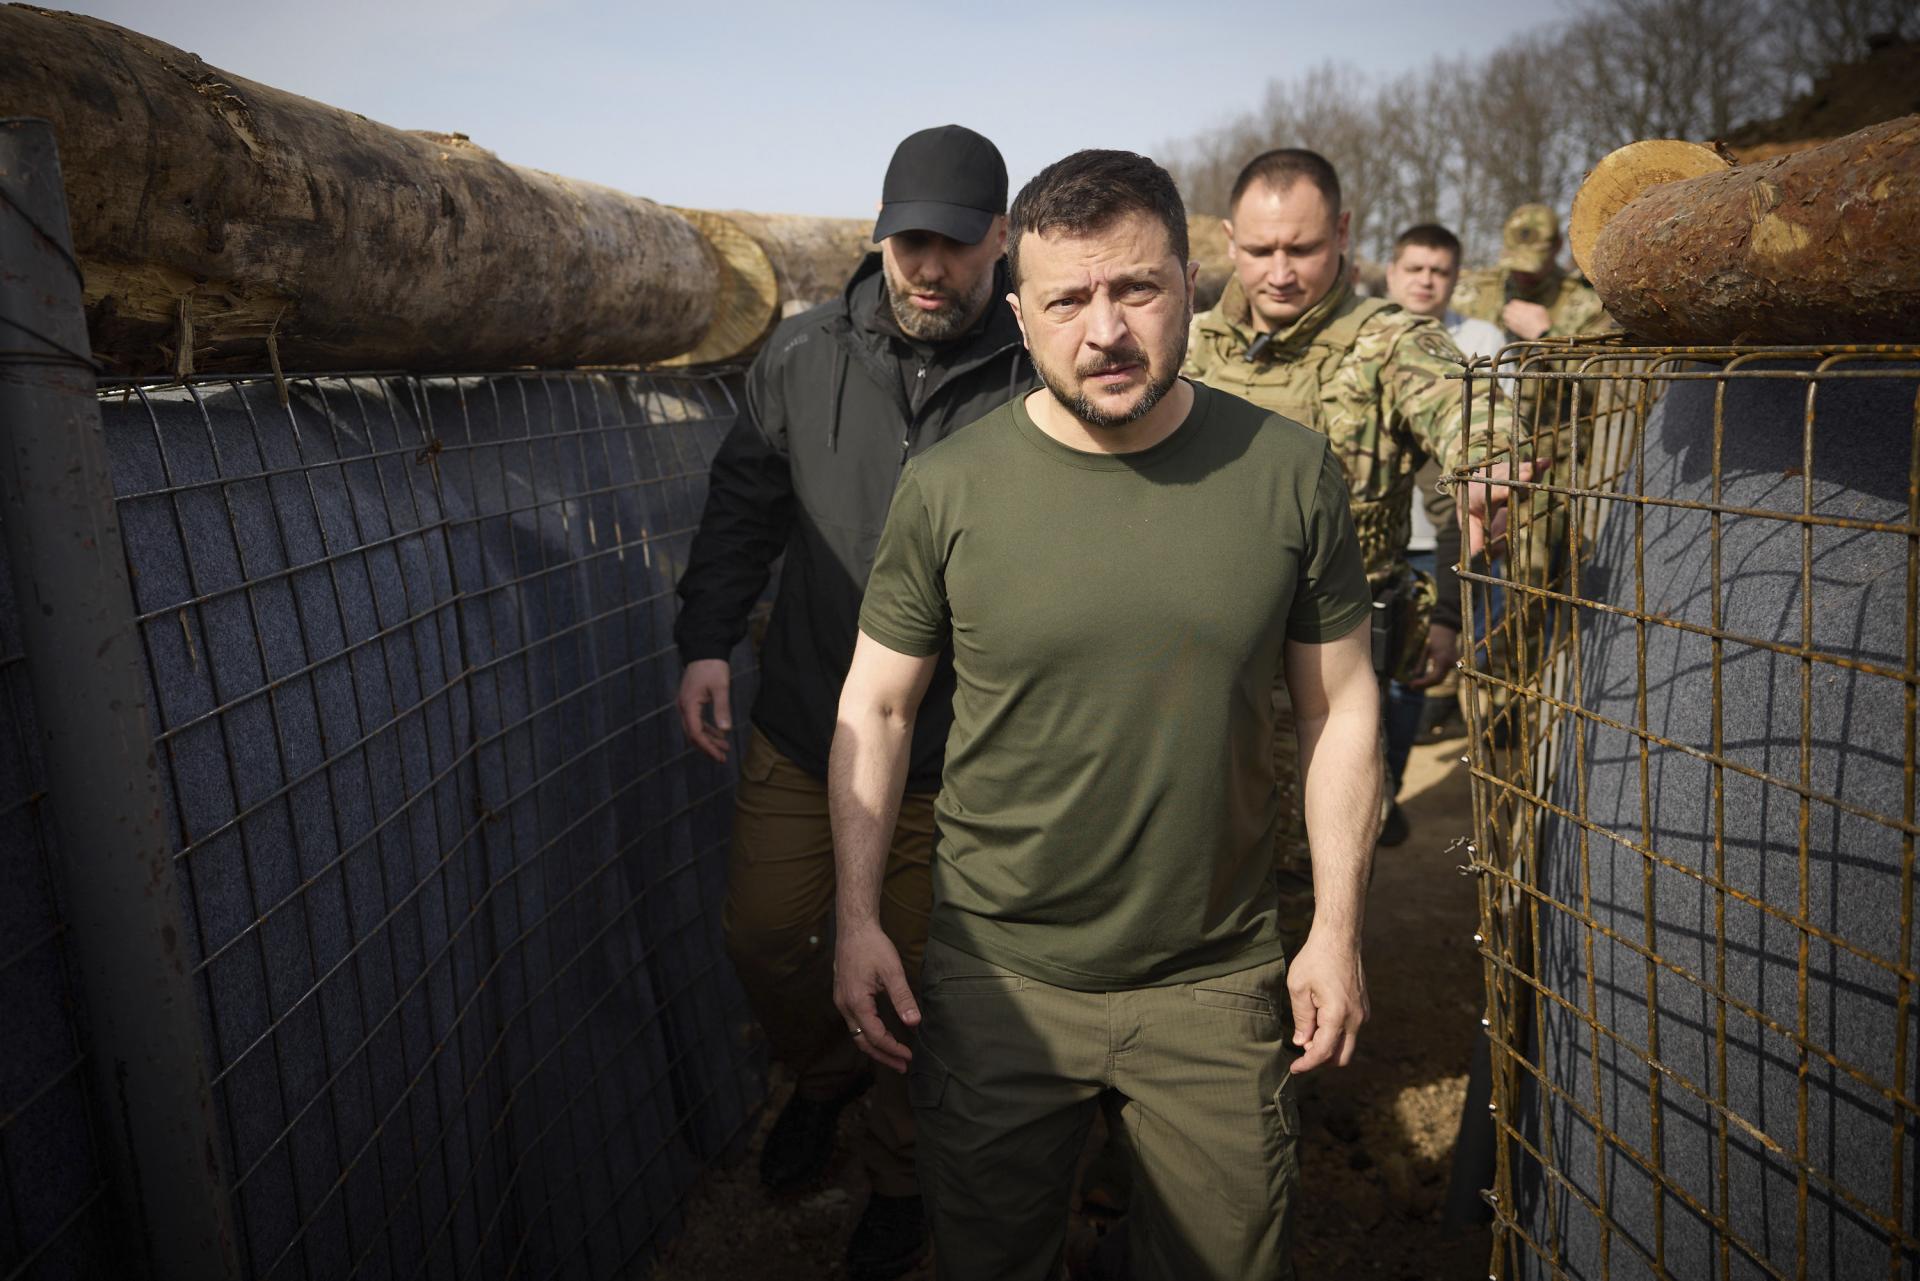 Plánovanie atentátu na Zelenského? V Poľsku zatkli muža podozrivého zo spolupráce s ruskou tajnou službou